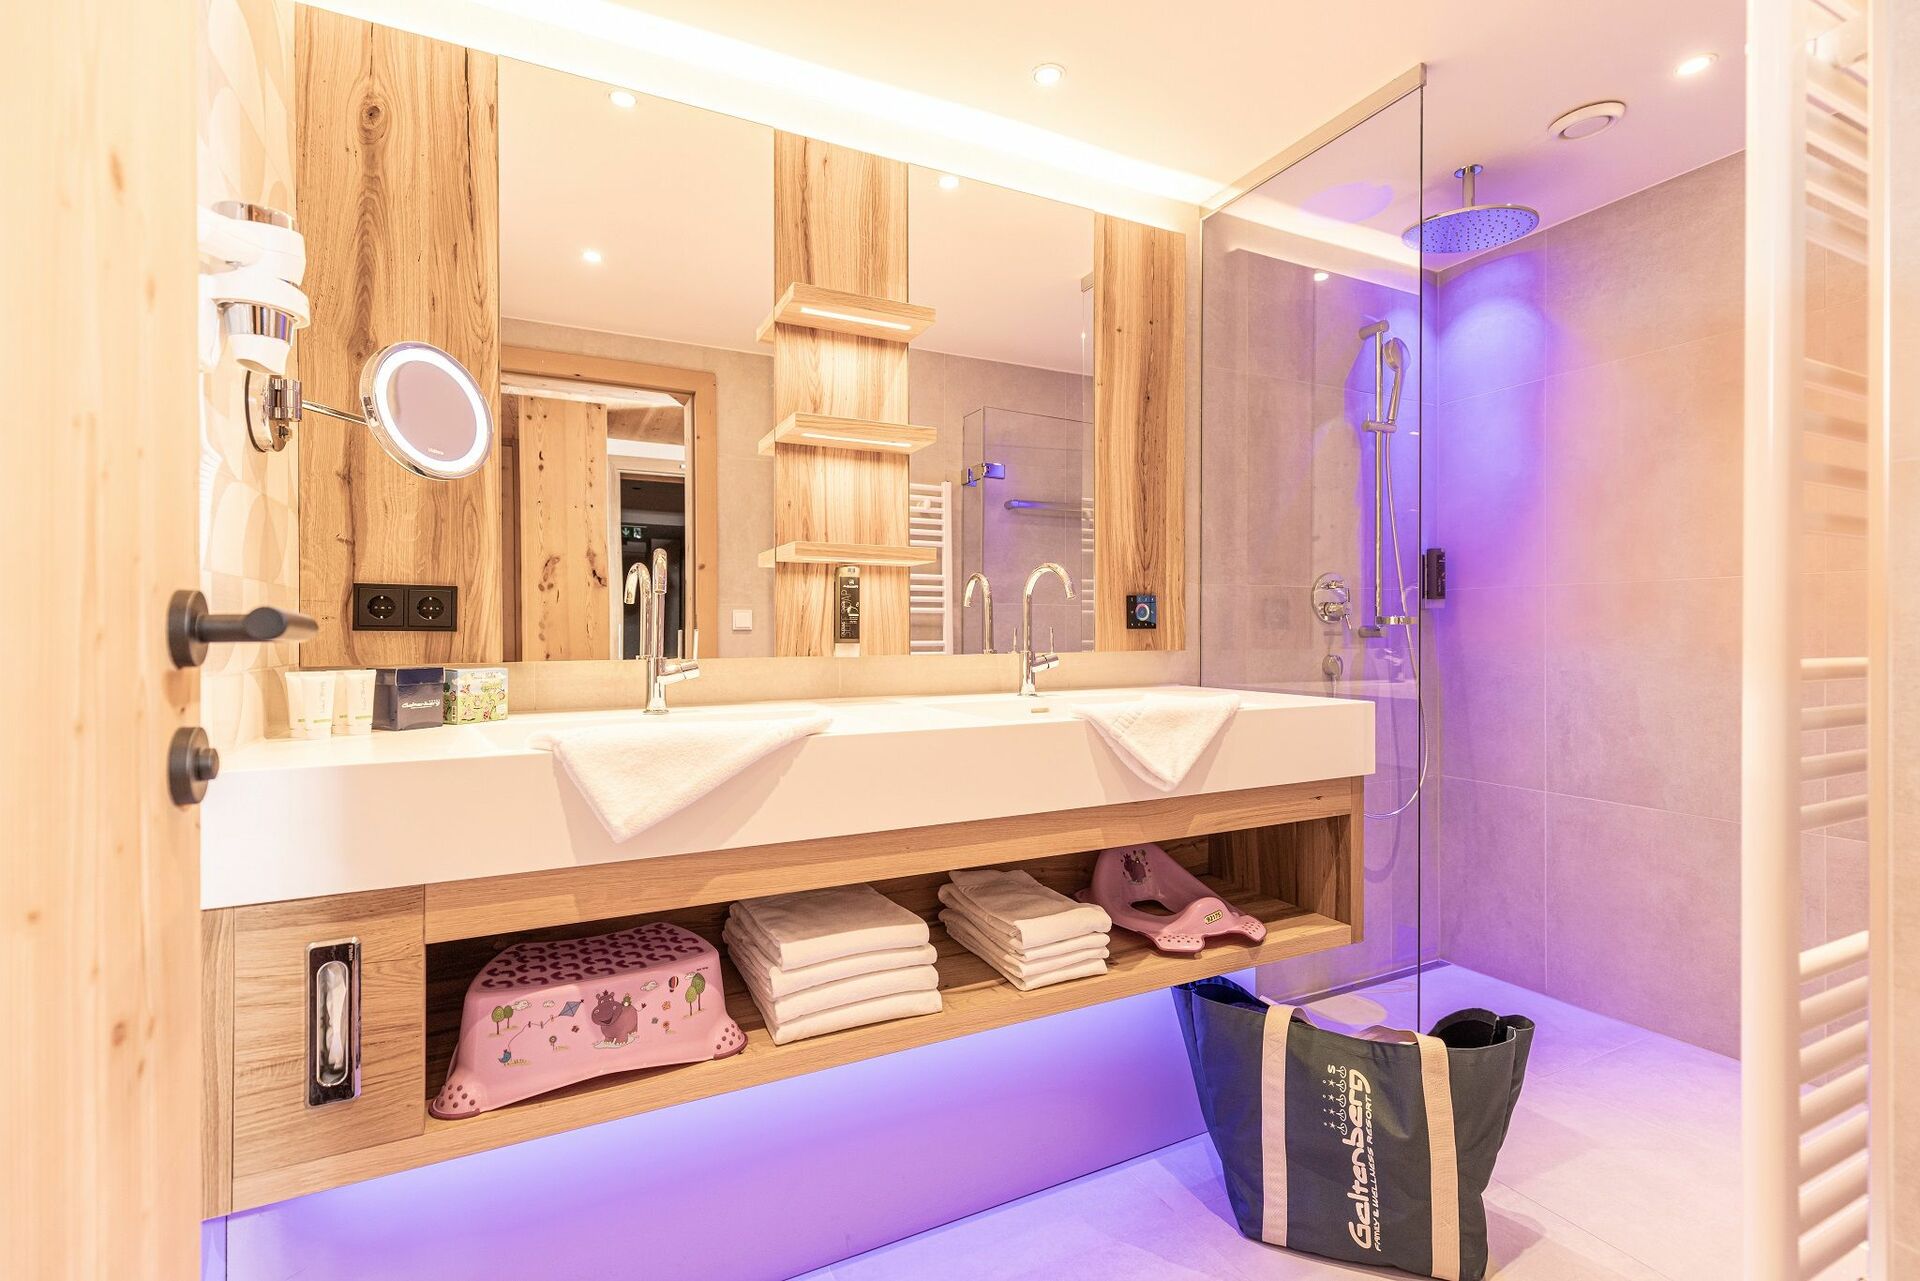 Ein Badezimmer mit Holzwaschbecken und lila Beleuchtung.